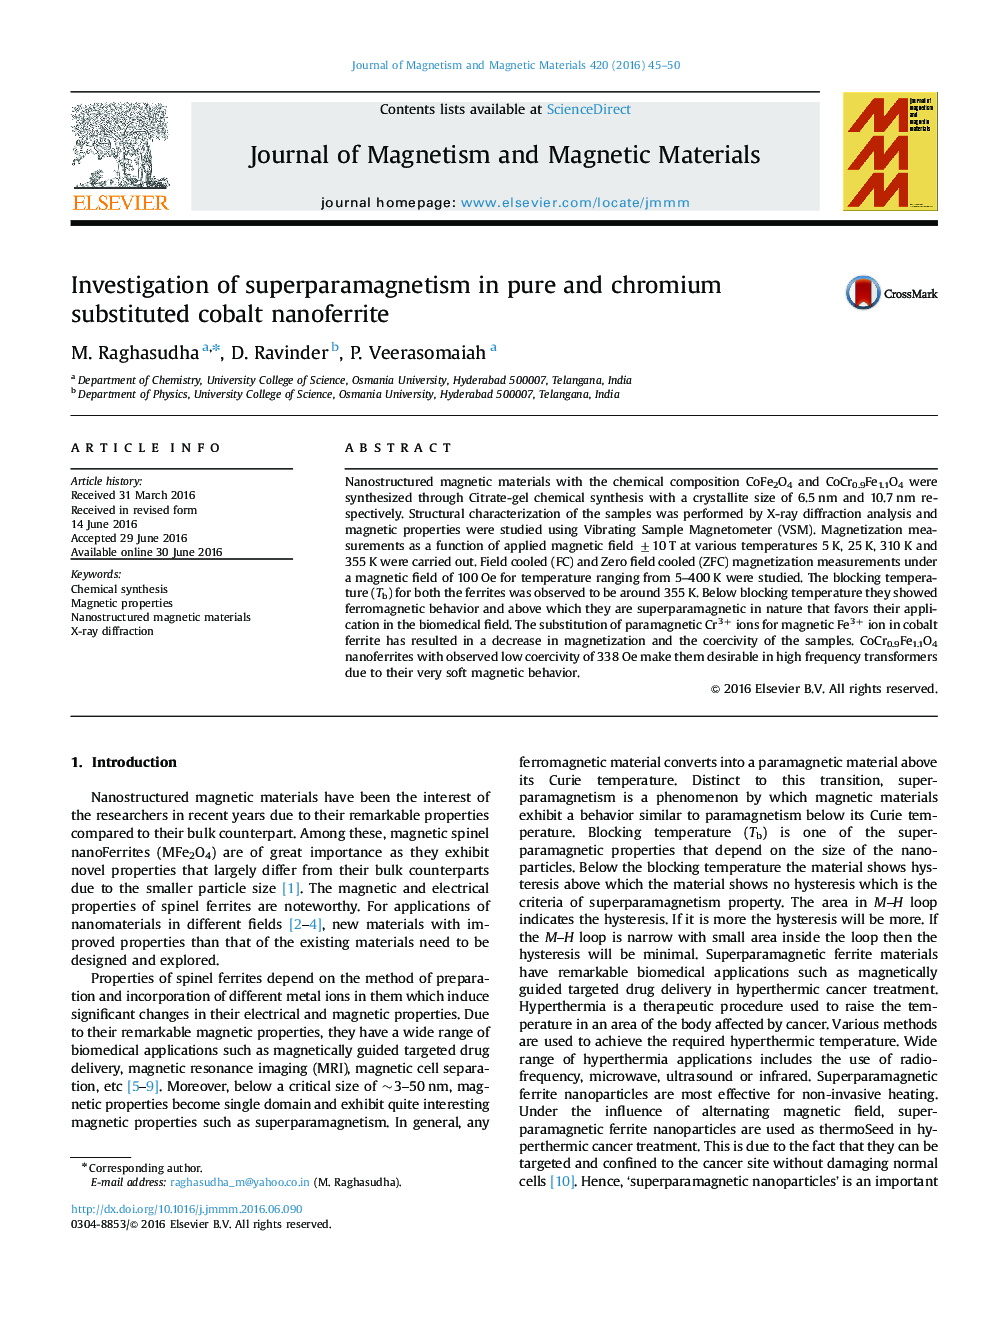 Investigation of superparamagnetism in pure and chromium substituted cobalt nanoferrite